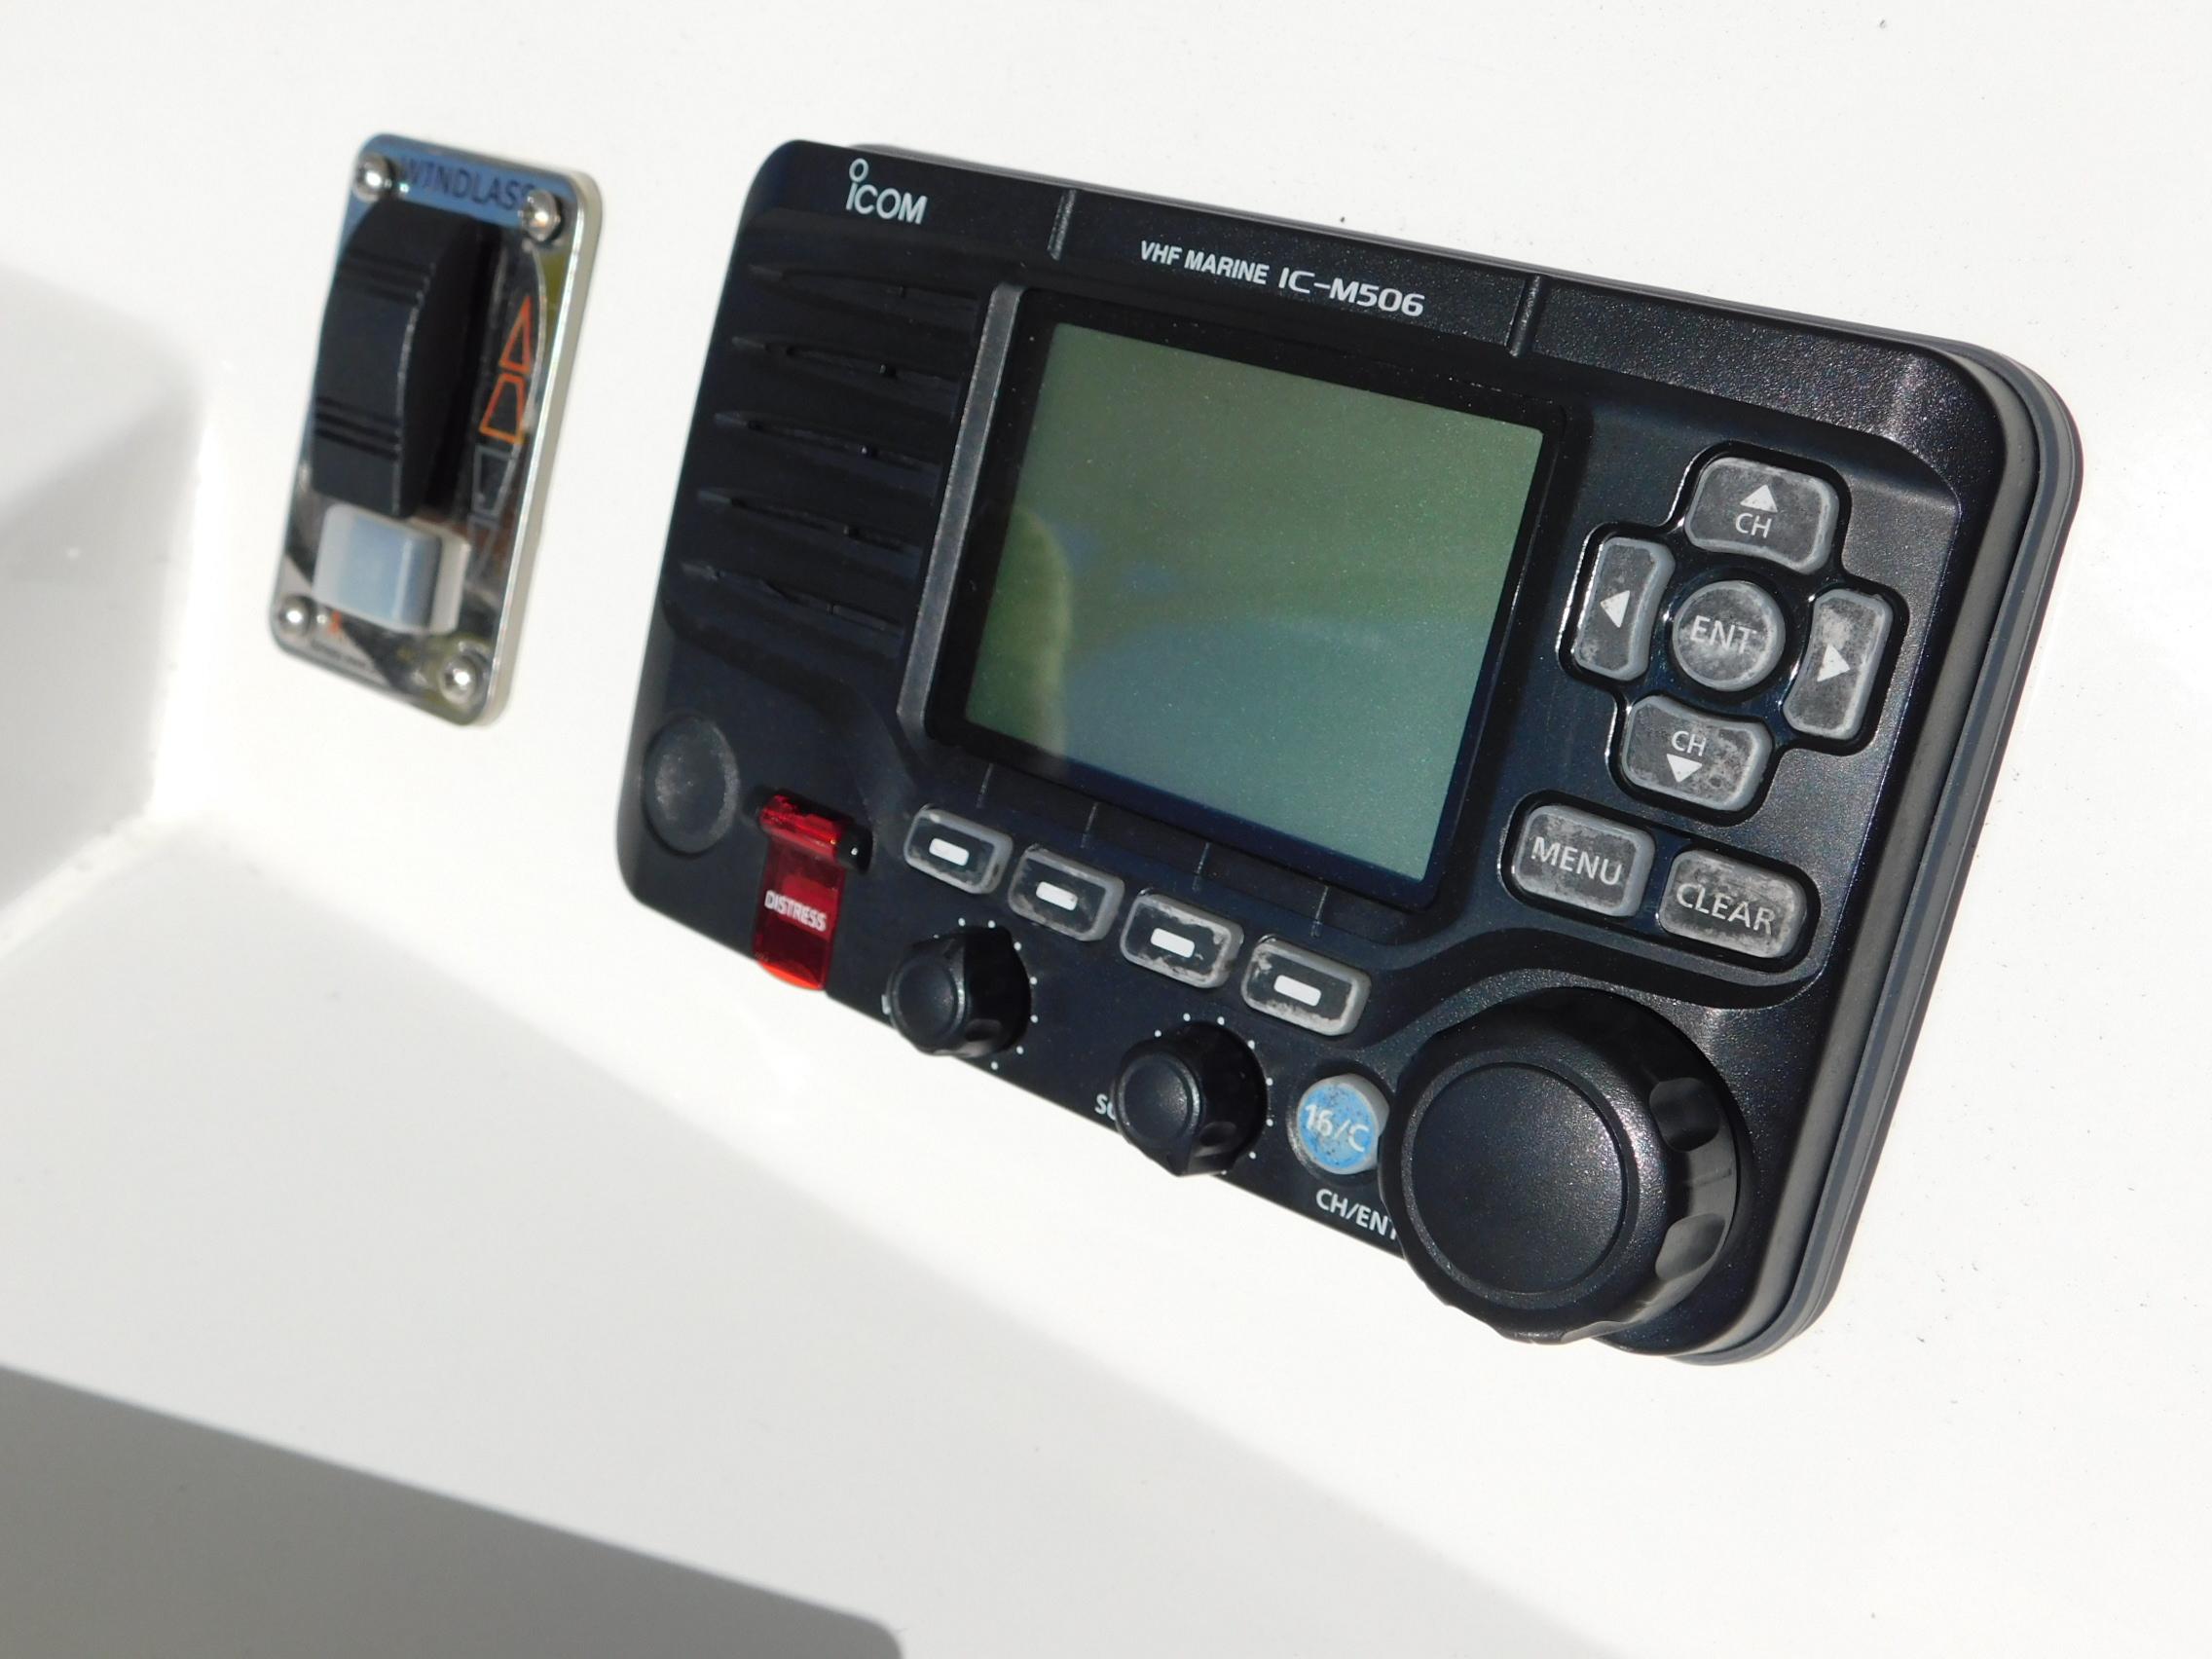 Dual ICOM M506 VHF